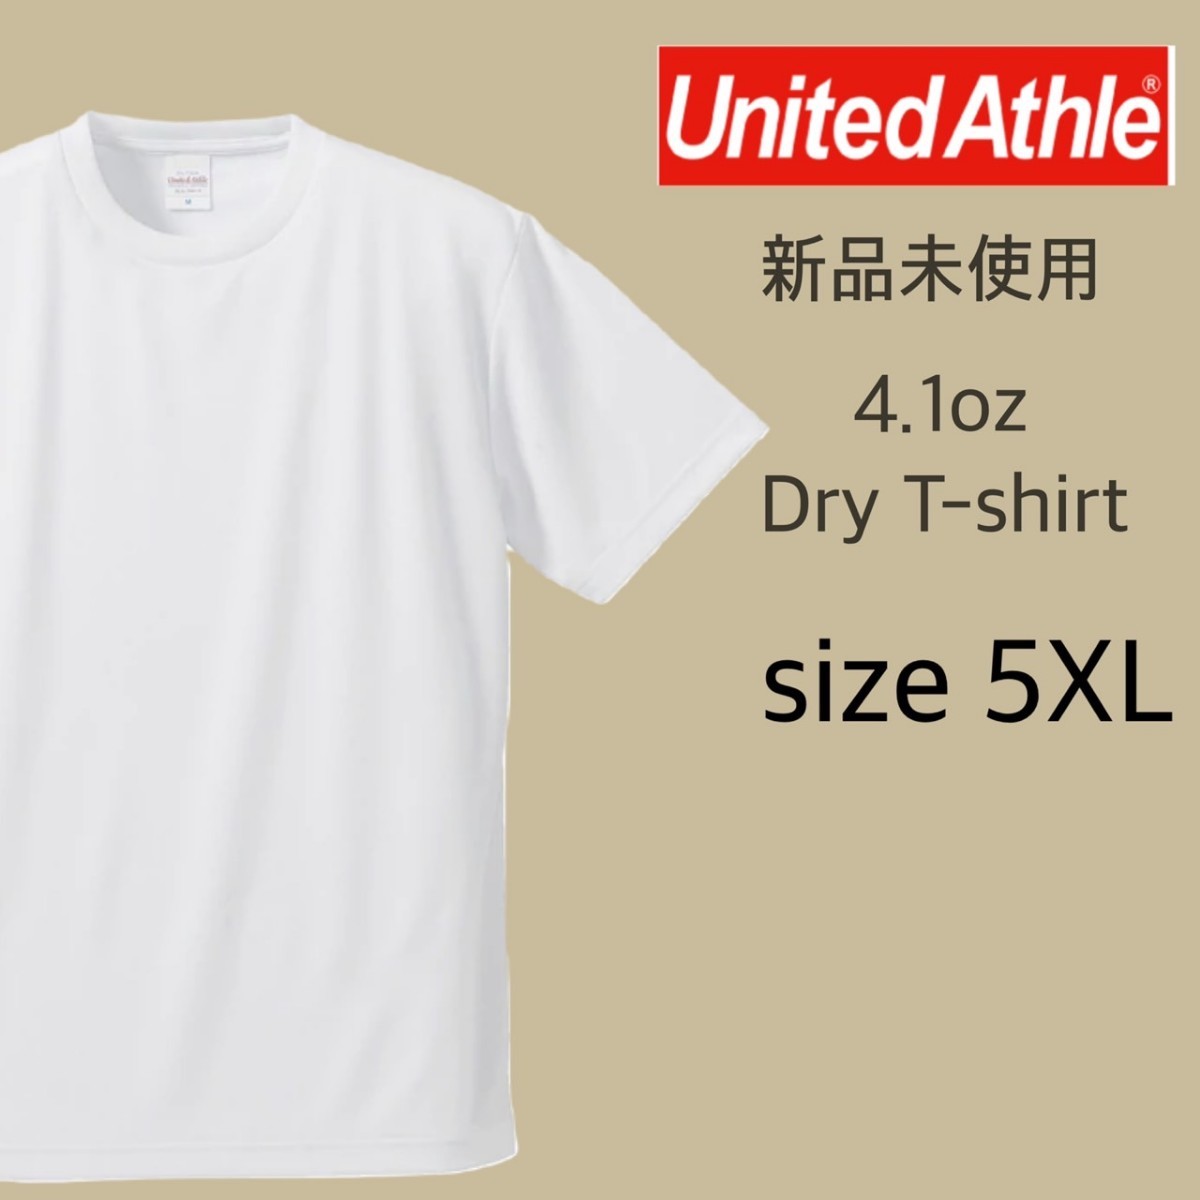 新品 ユナイテッドアスレ 4.1oz ドライアスレチック Tシャツ ホワイト 白 5XLサイズ United Athle 590001_画像1